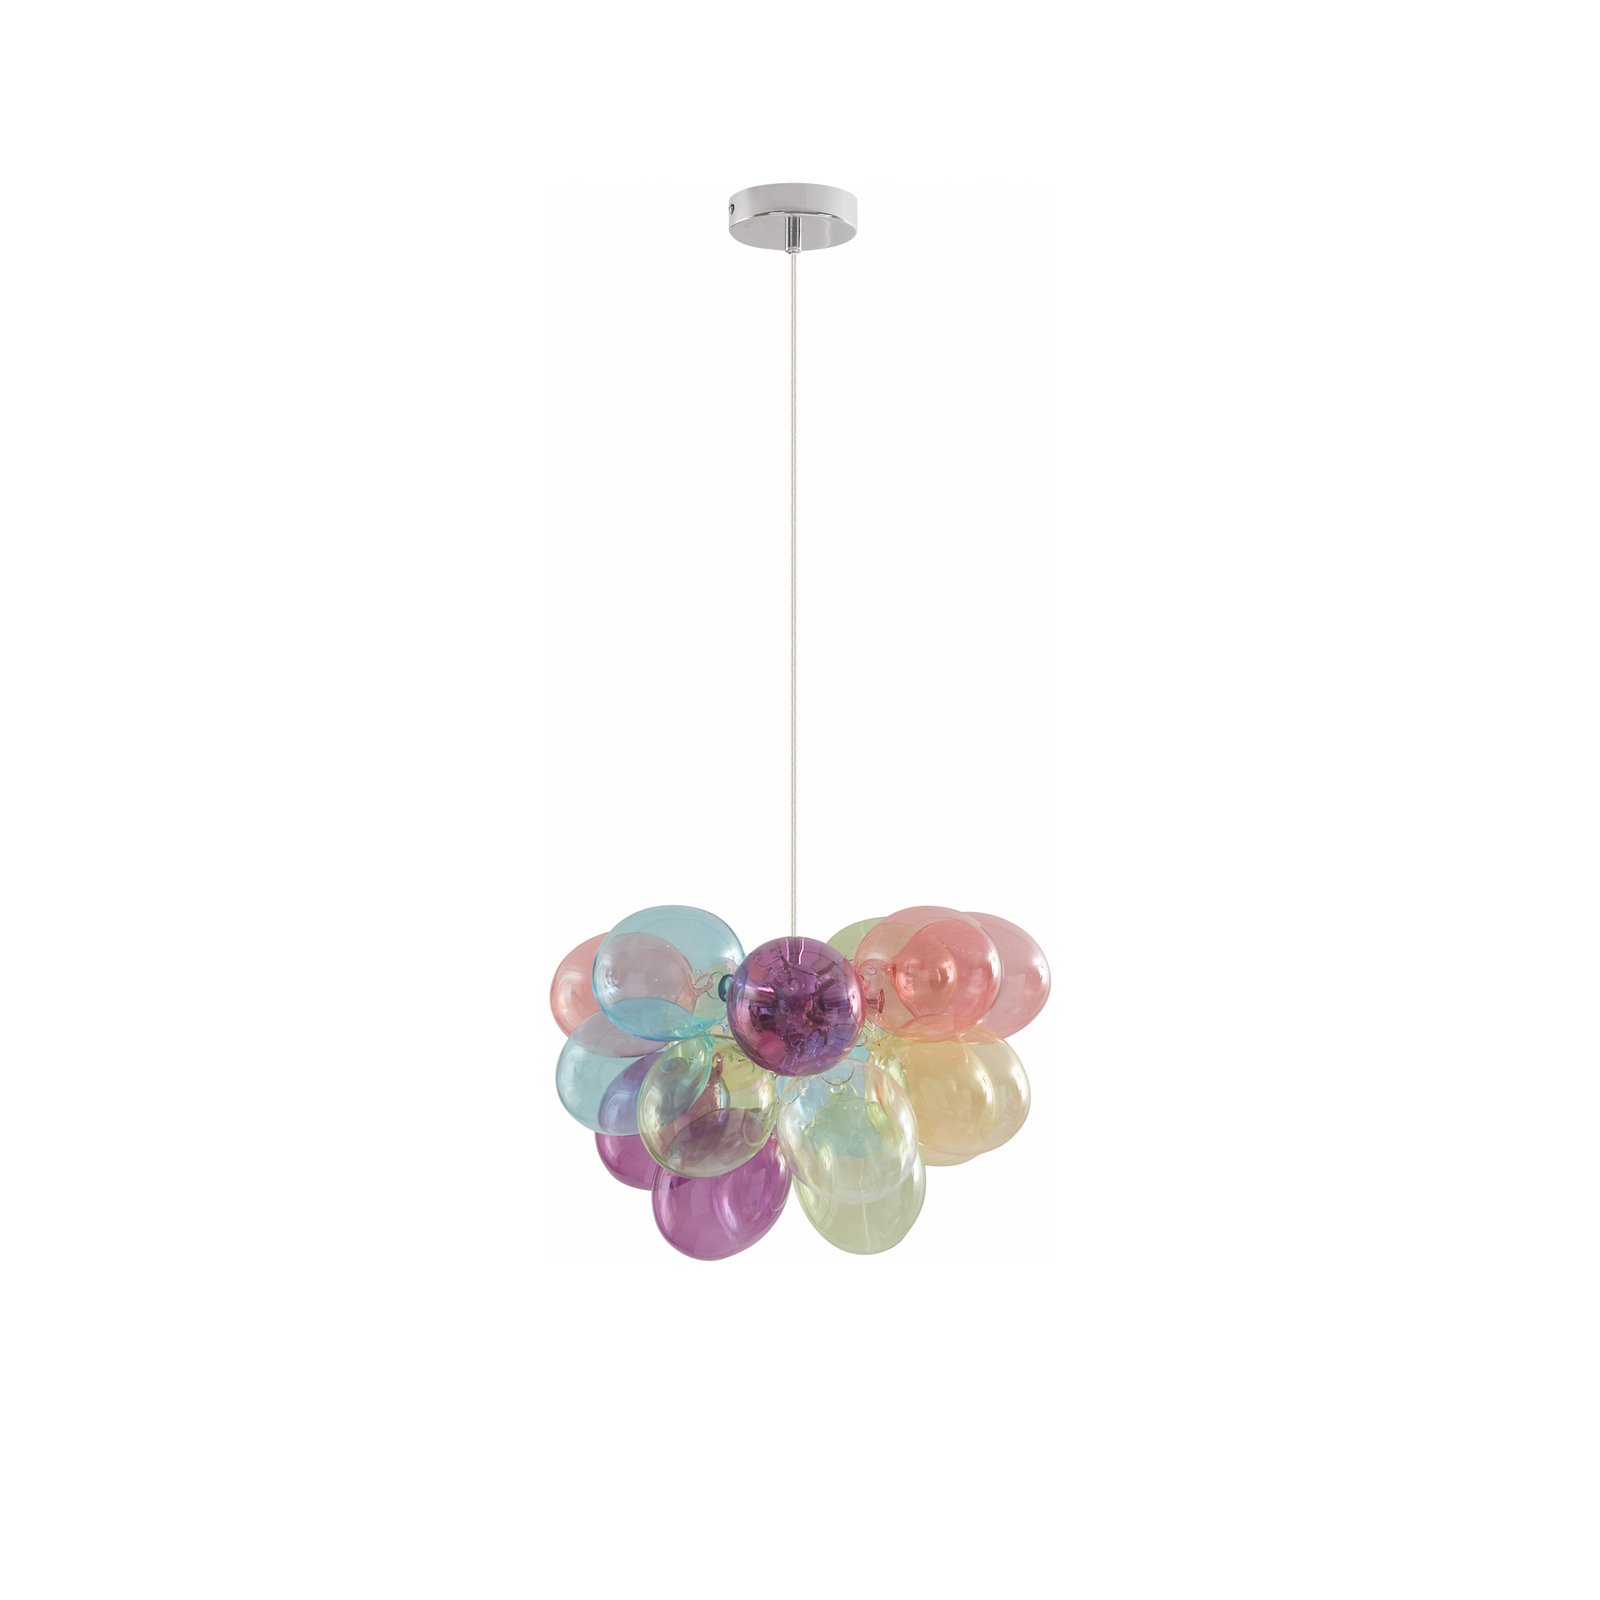 Lucande hanglamp Diborah, gekleurd, glas, Ø 40 cm, G9